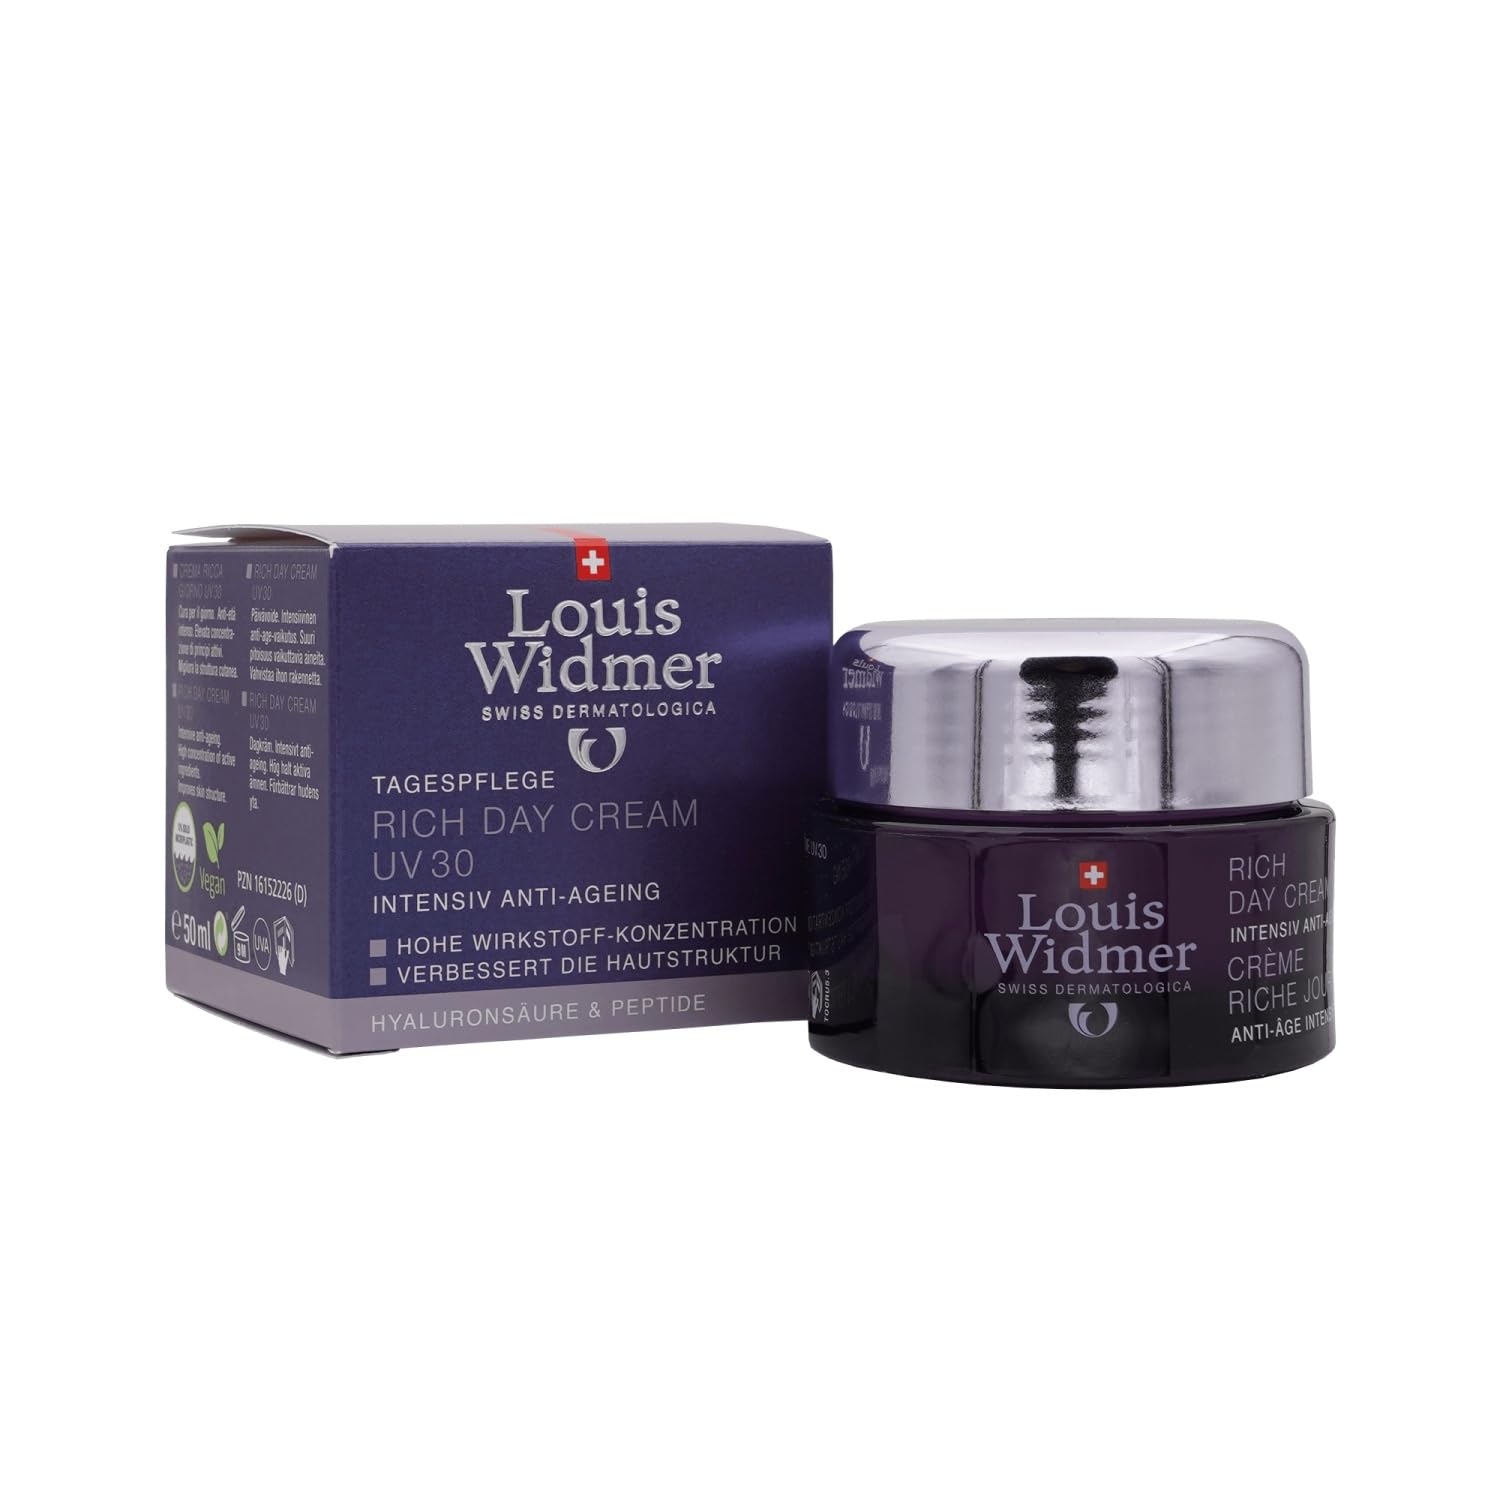 Widmer Rich Day Cream UV 30 leicht parfmiert, 50 ml